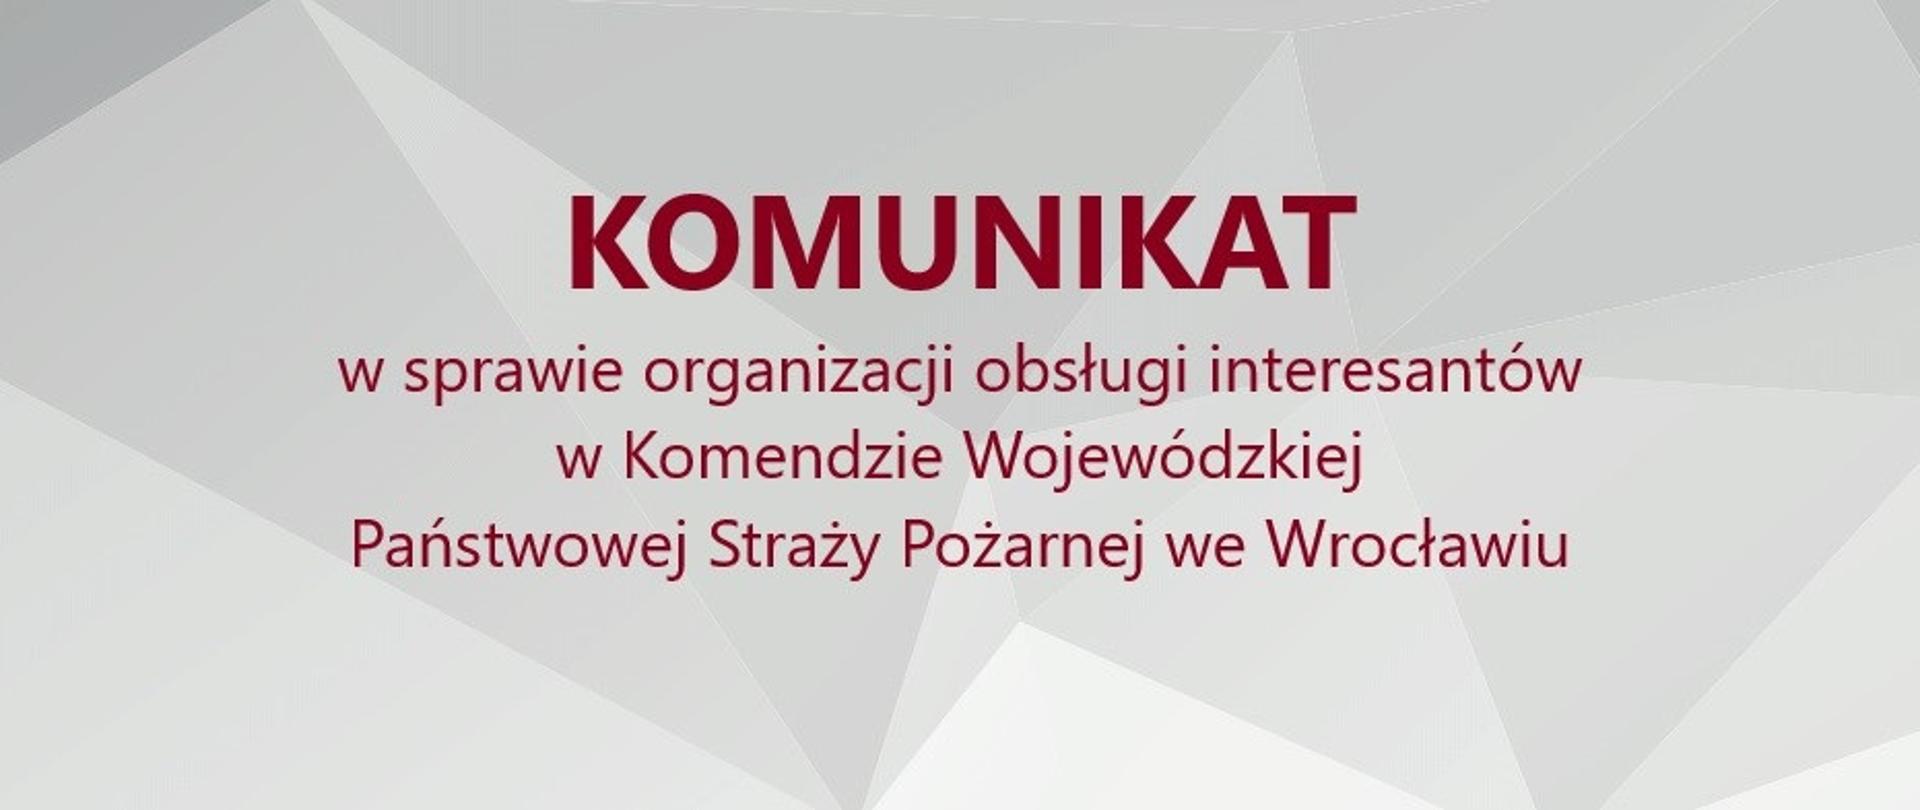 Komunikat w sprawie obsługi interesantów w KW PSP we Wrocławiu